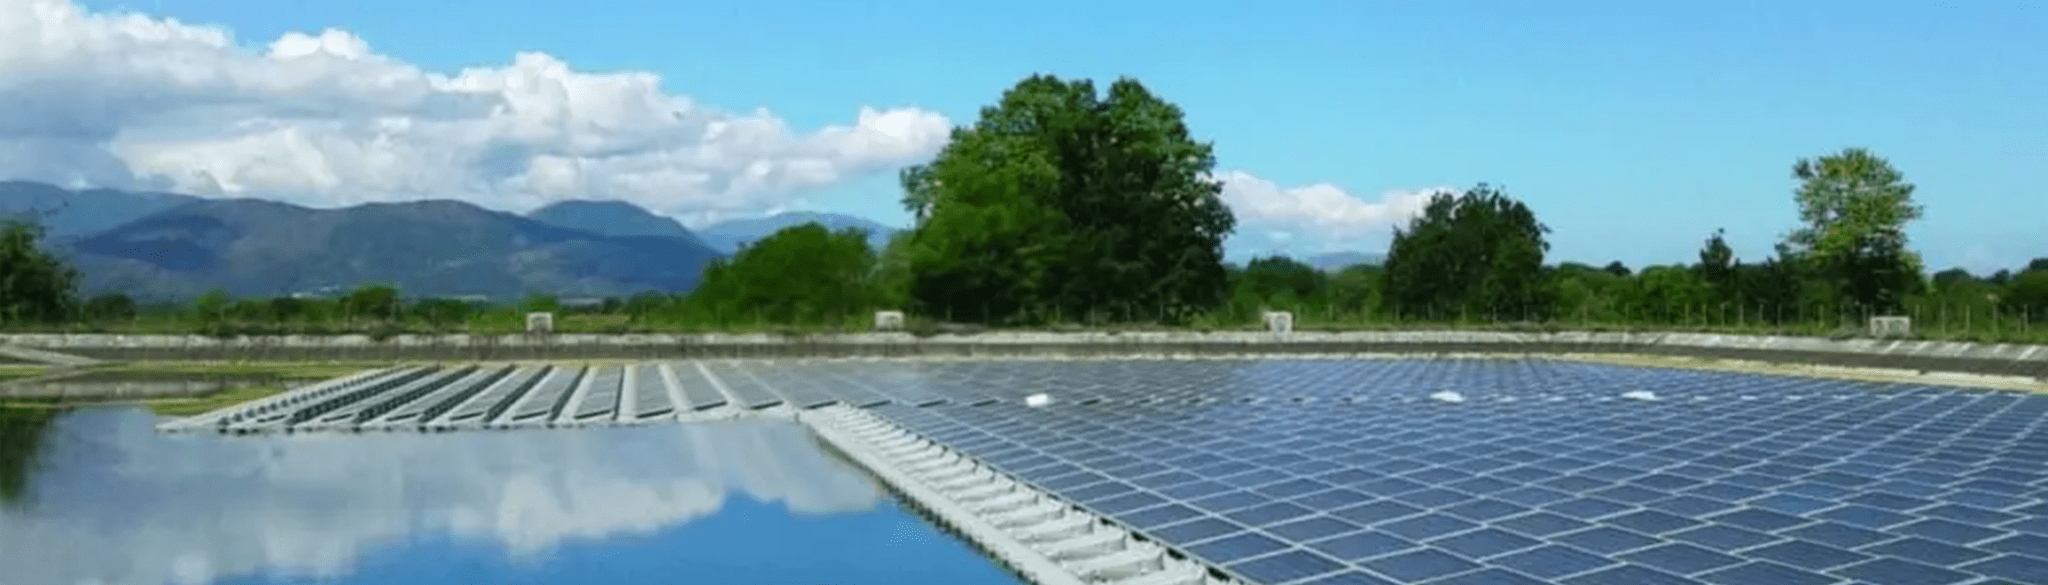 Centrale photovoltaique flottante - blog